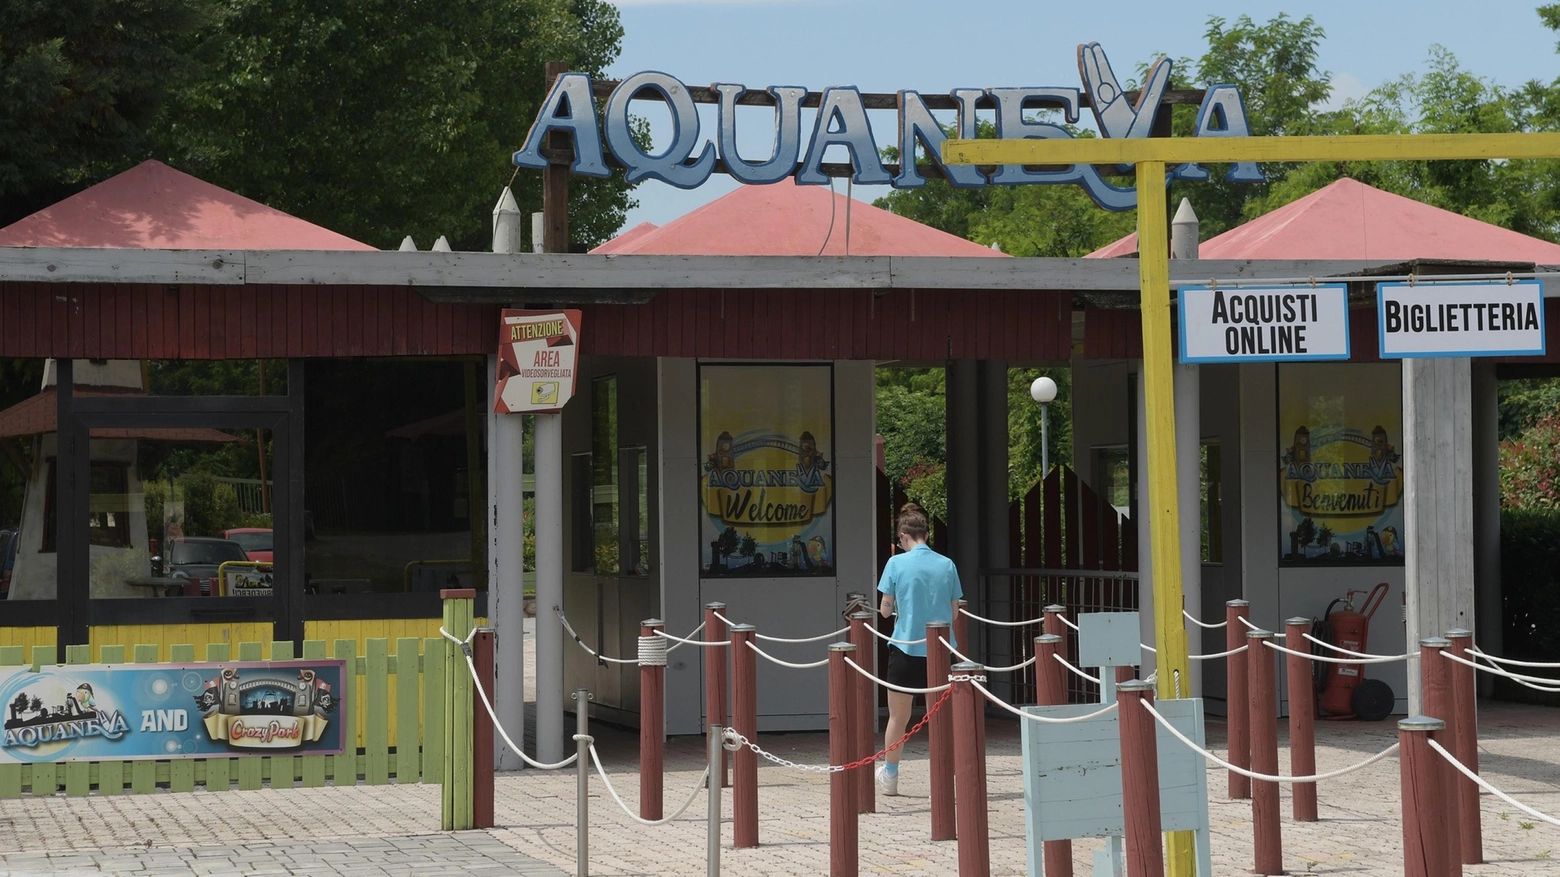 L'ingresso del parco acquatico Aquaneva di Inzagno